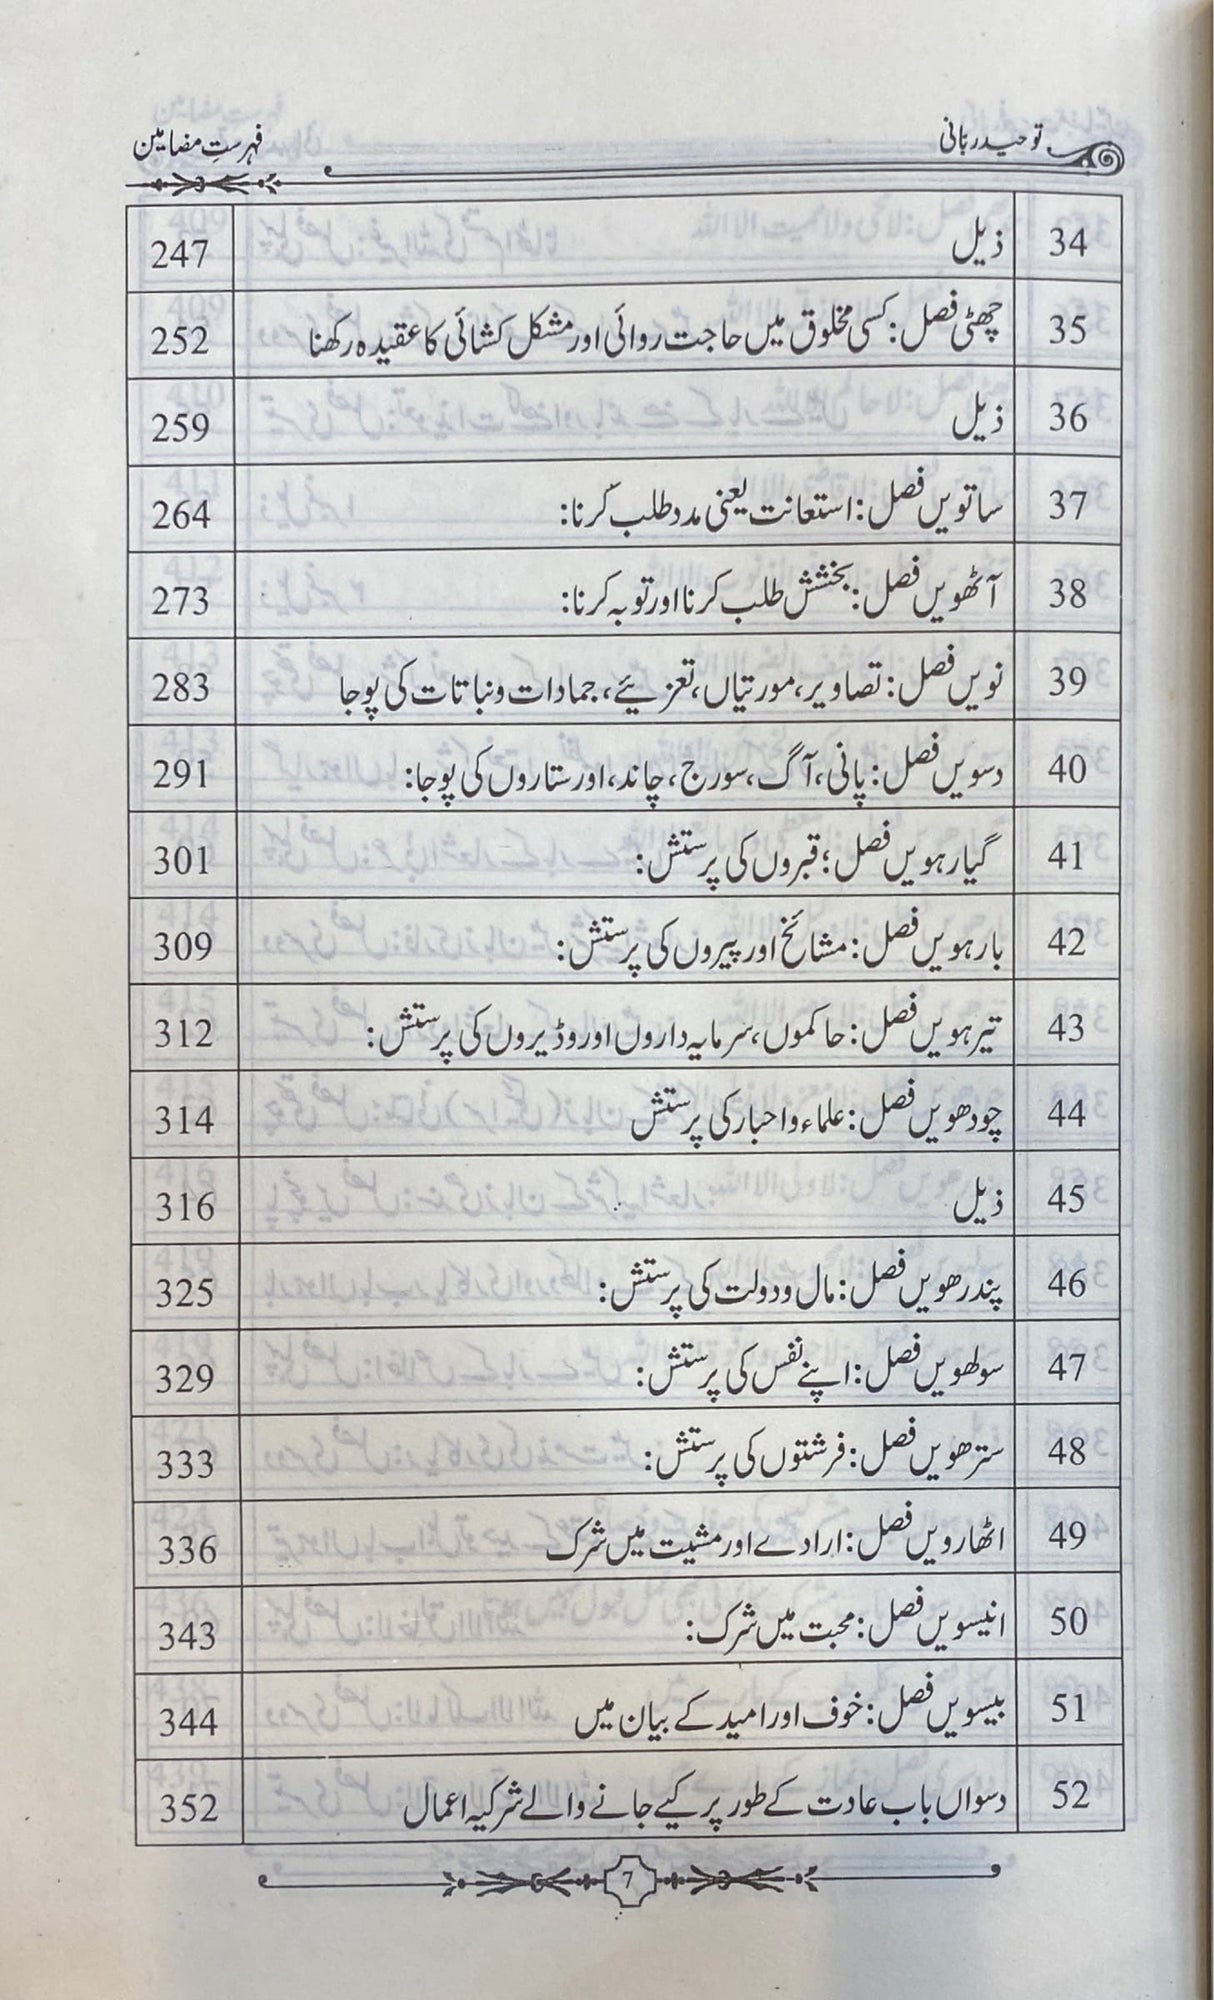 Urdu Tawheed Rabani